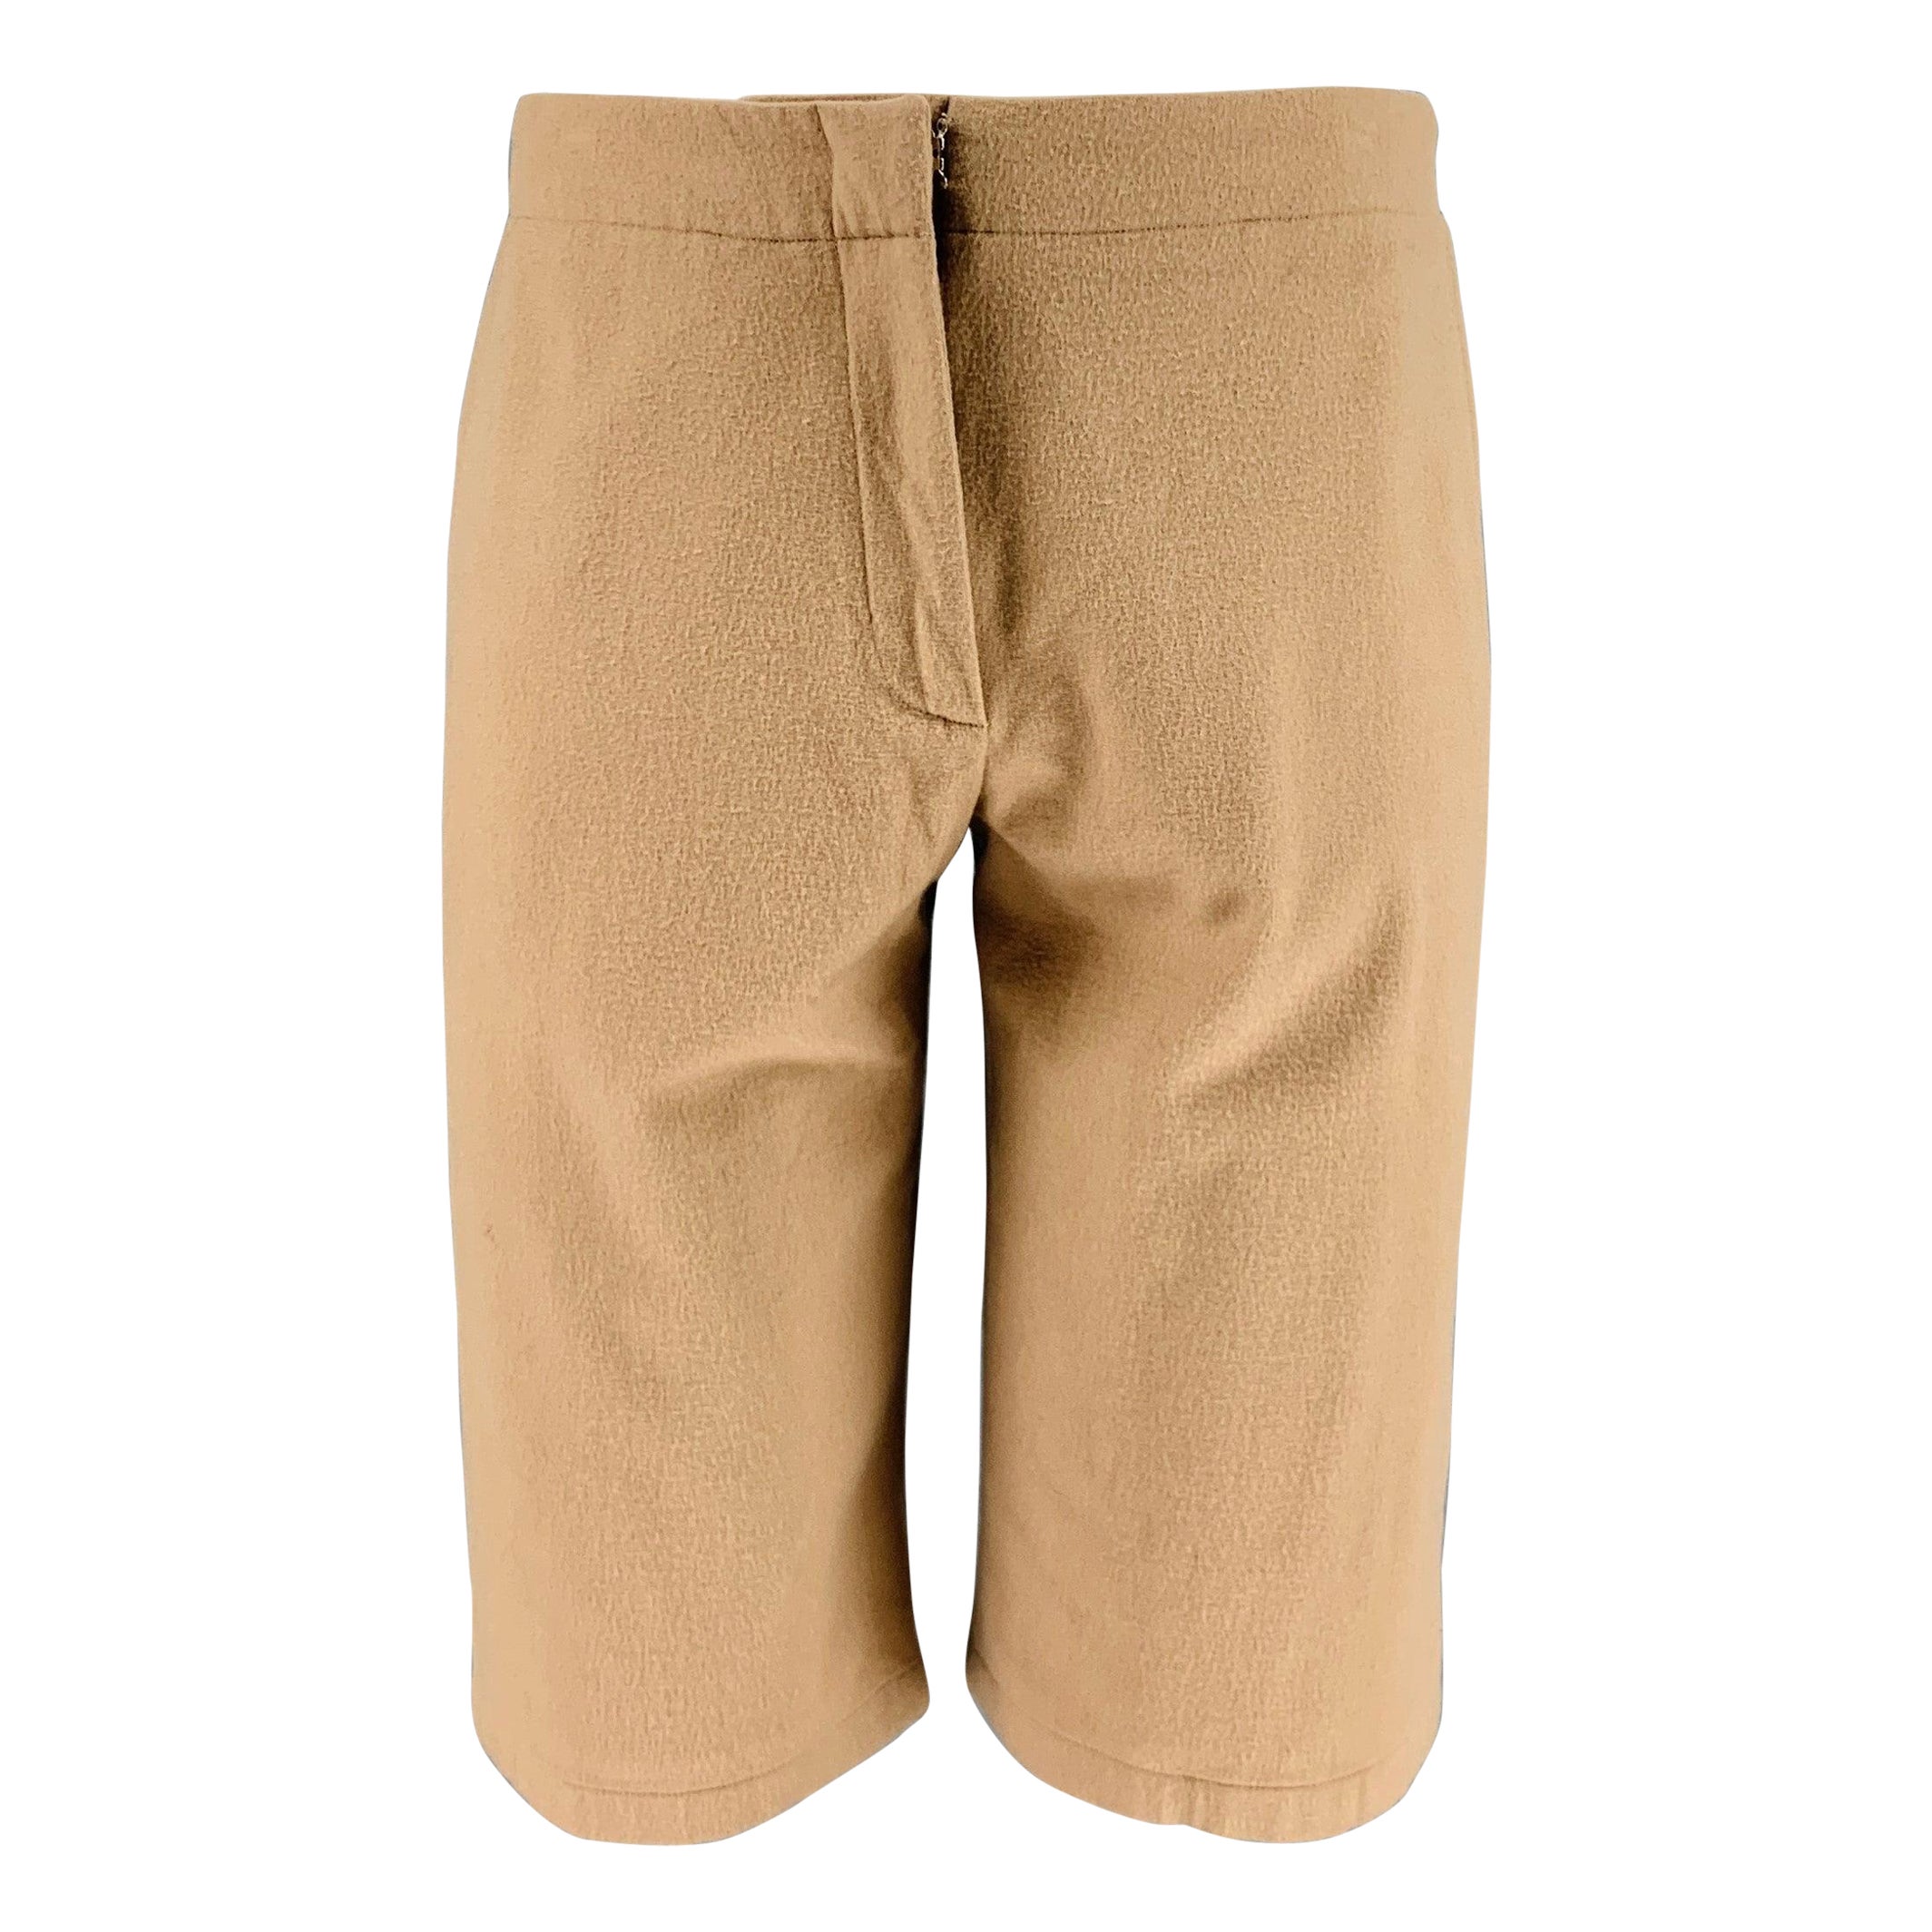 JIL SANDER Size 8 Camel Wool Blend Flat Front Shorts For Sale